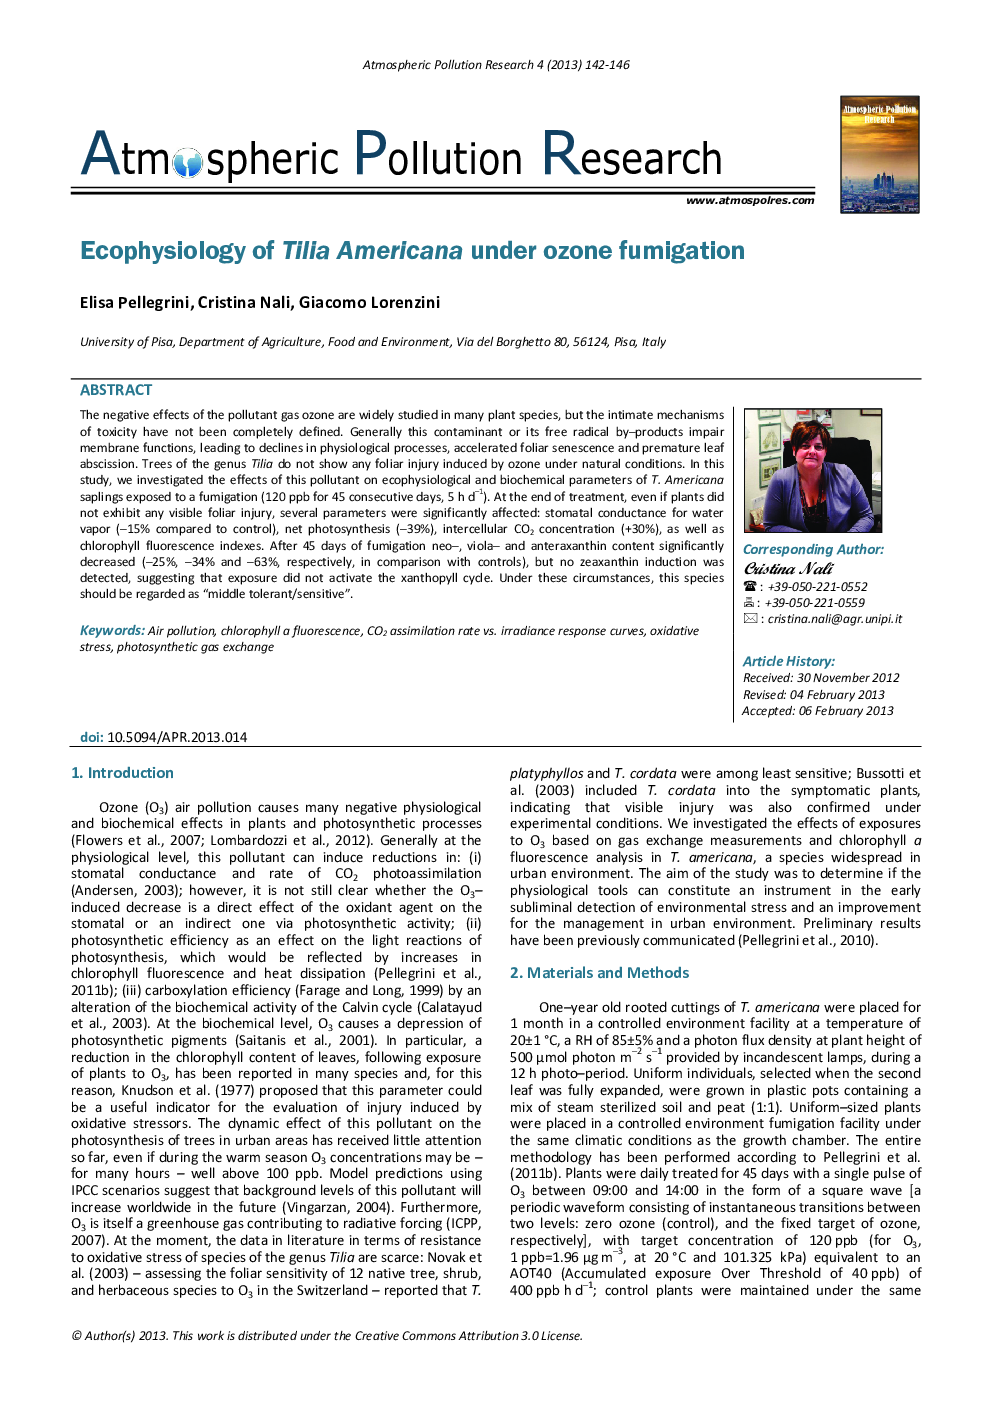 Ecophysiology of Tilia Americana under ozone fumigation